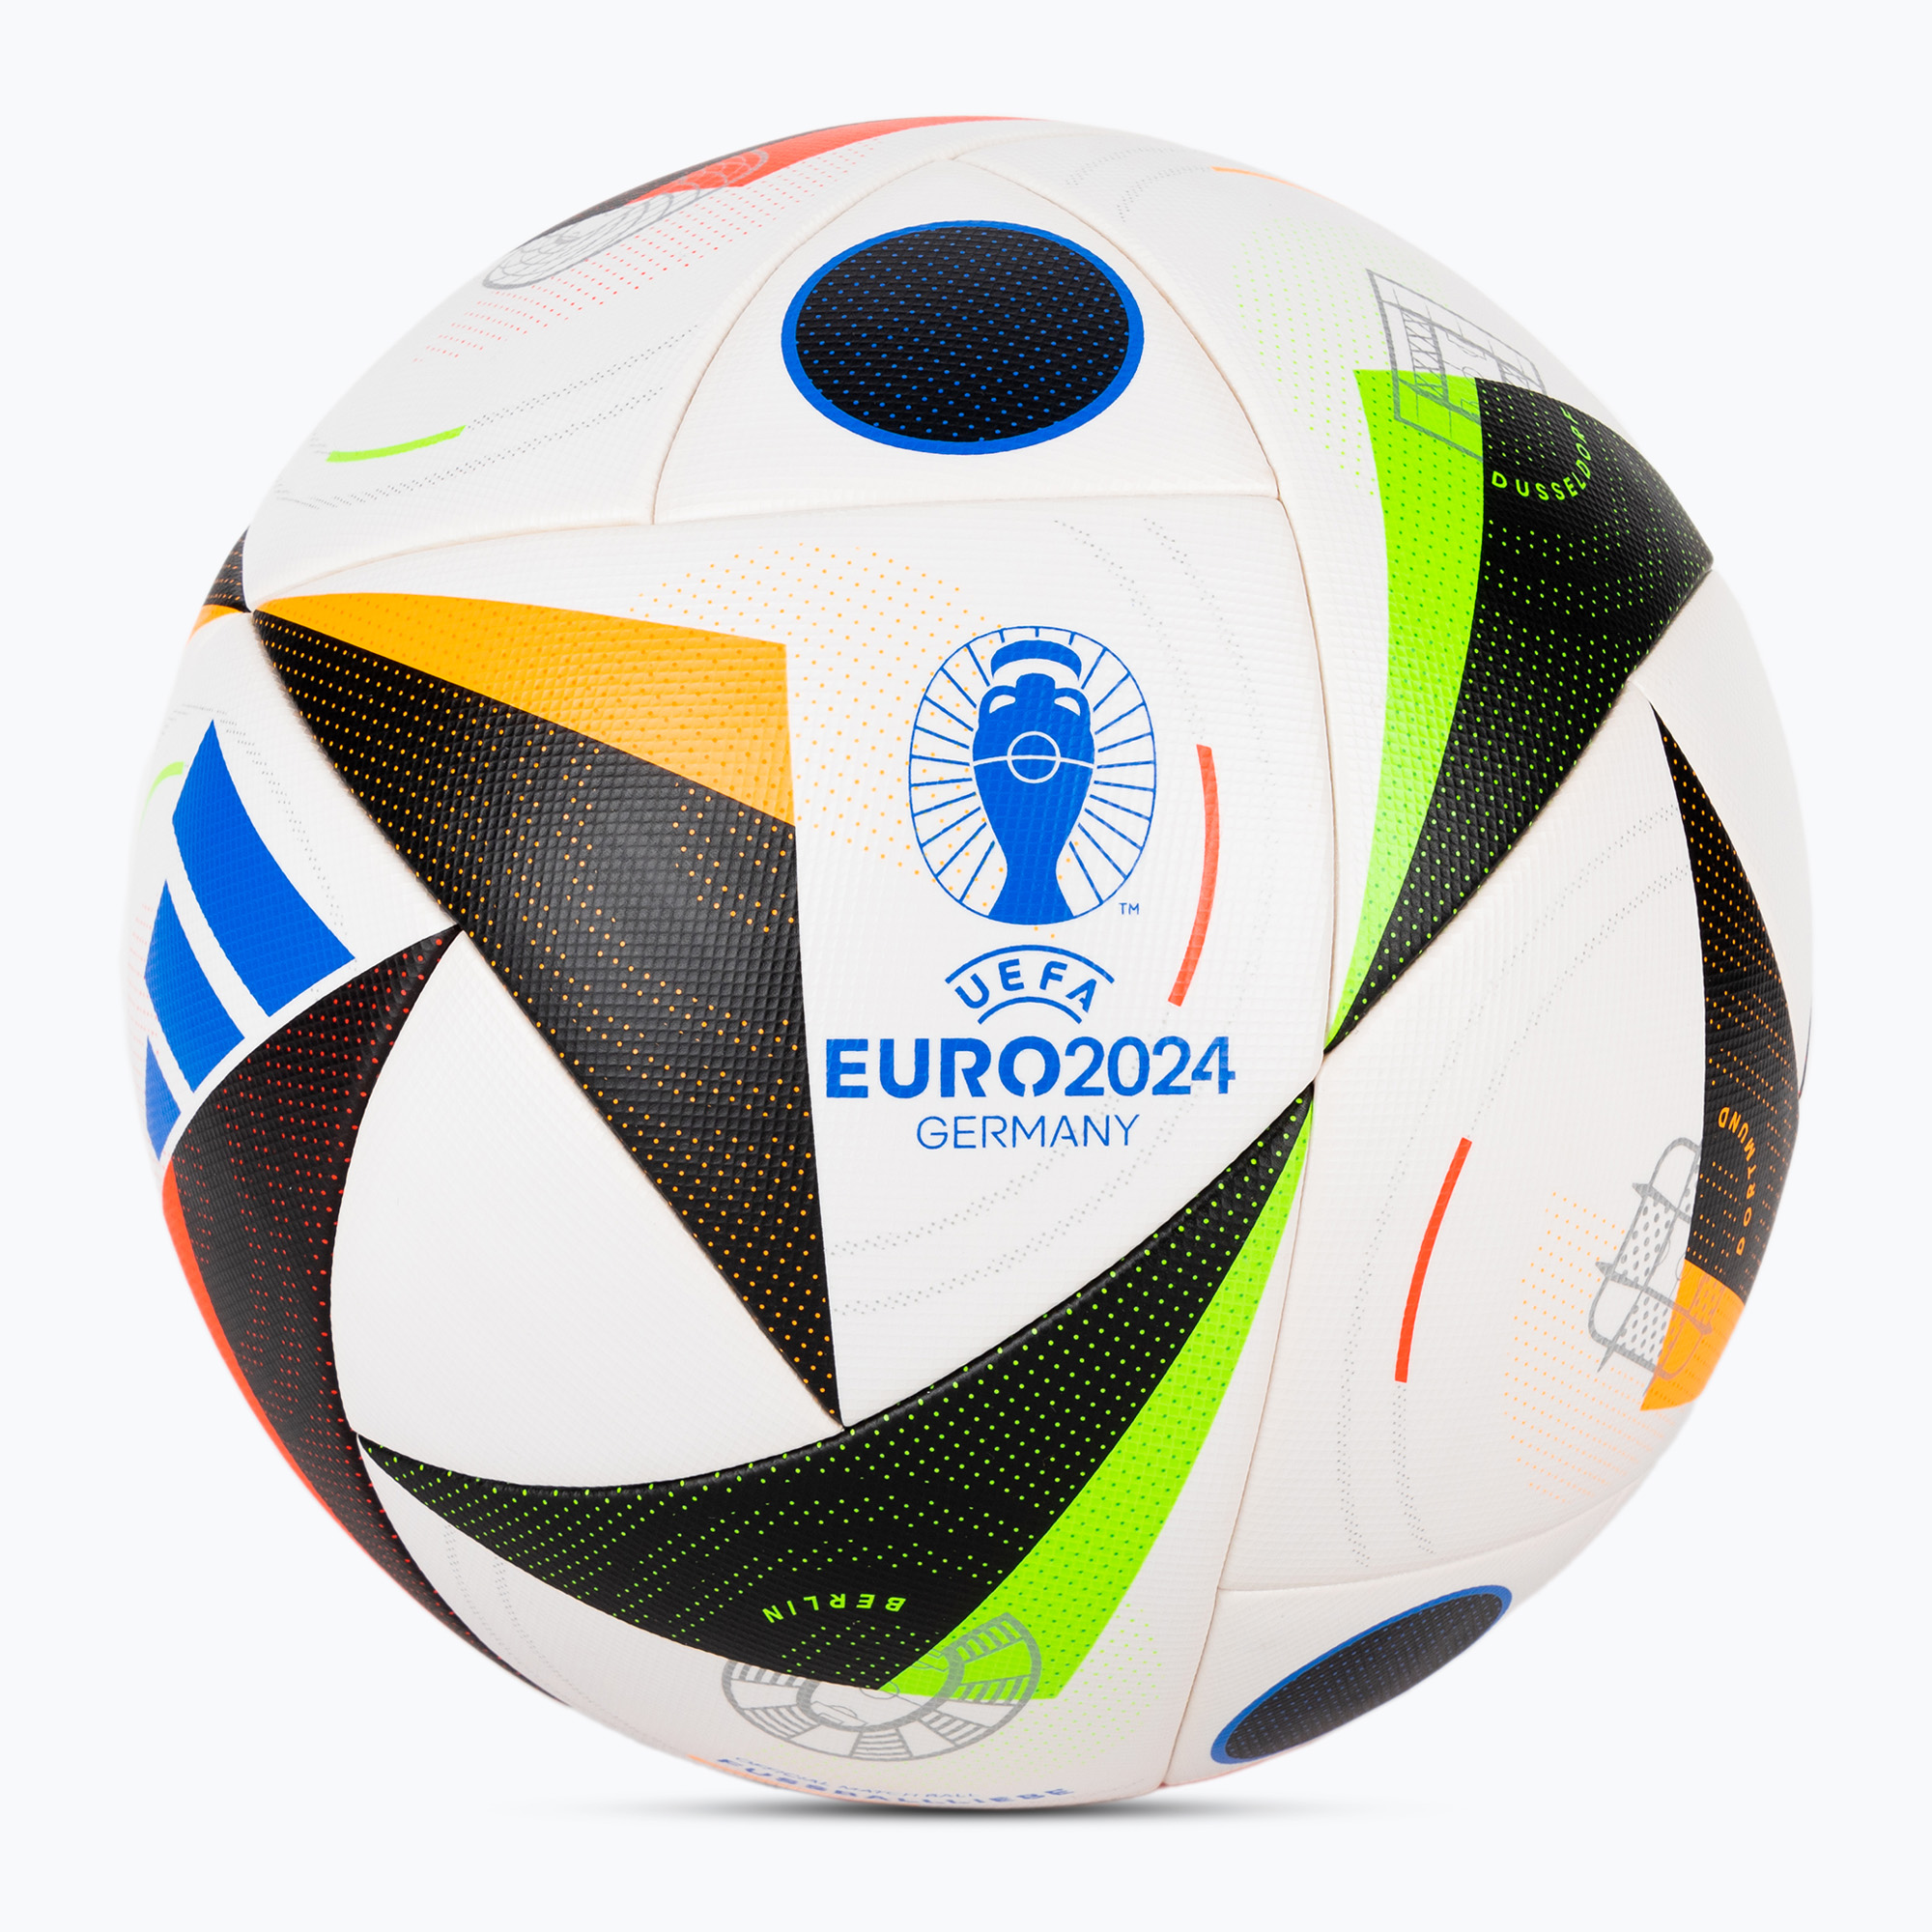 adidas Fussballliebe Competition Euro 2024 white/black/glow blue size 5 football